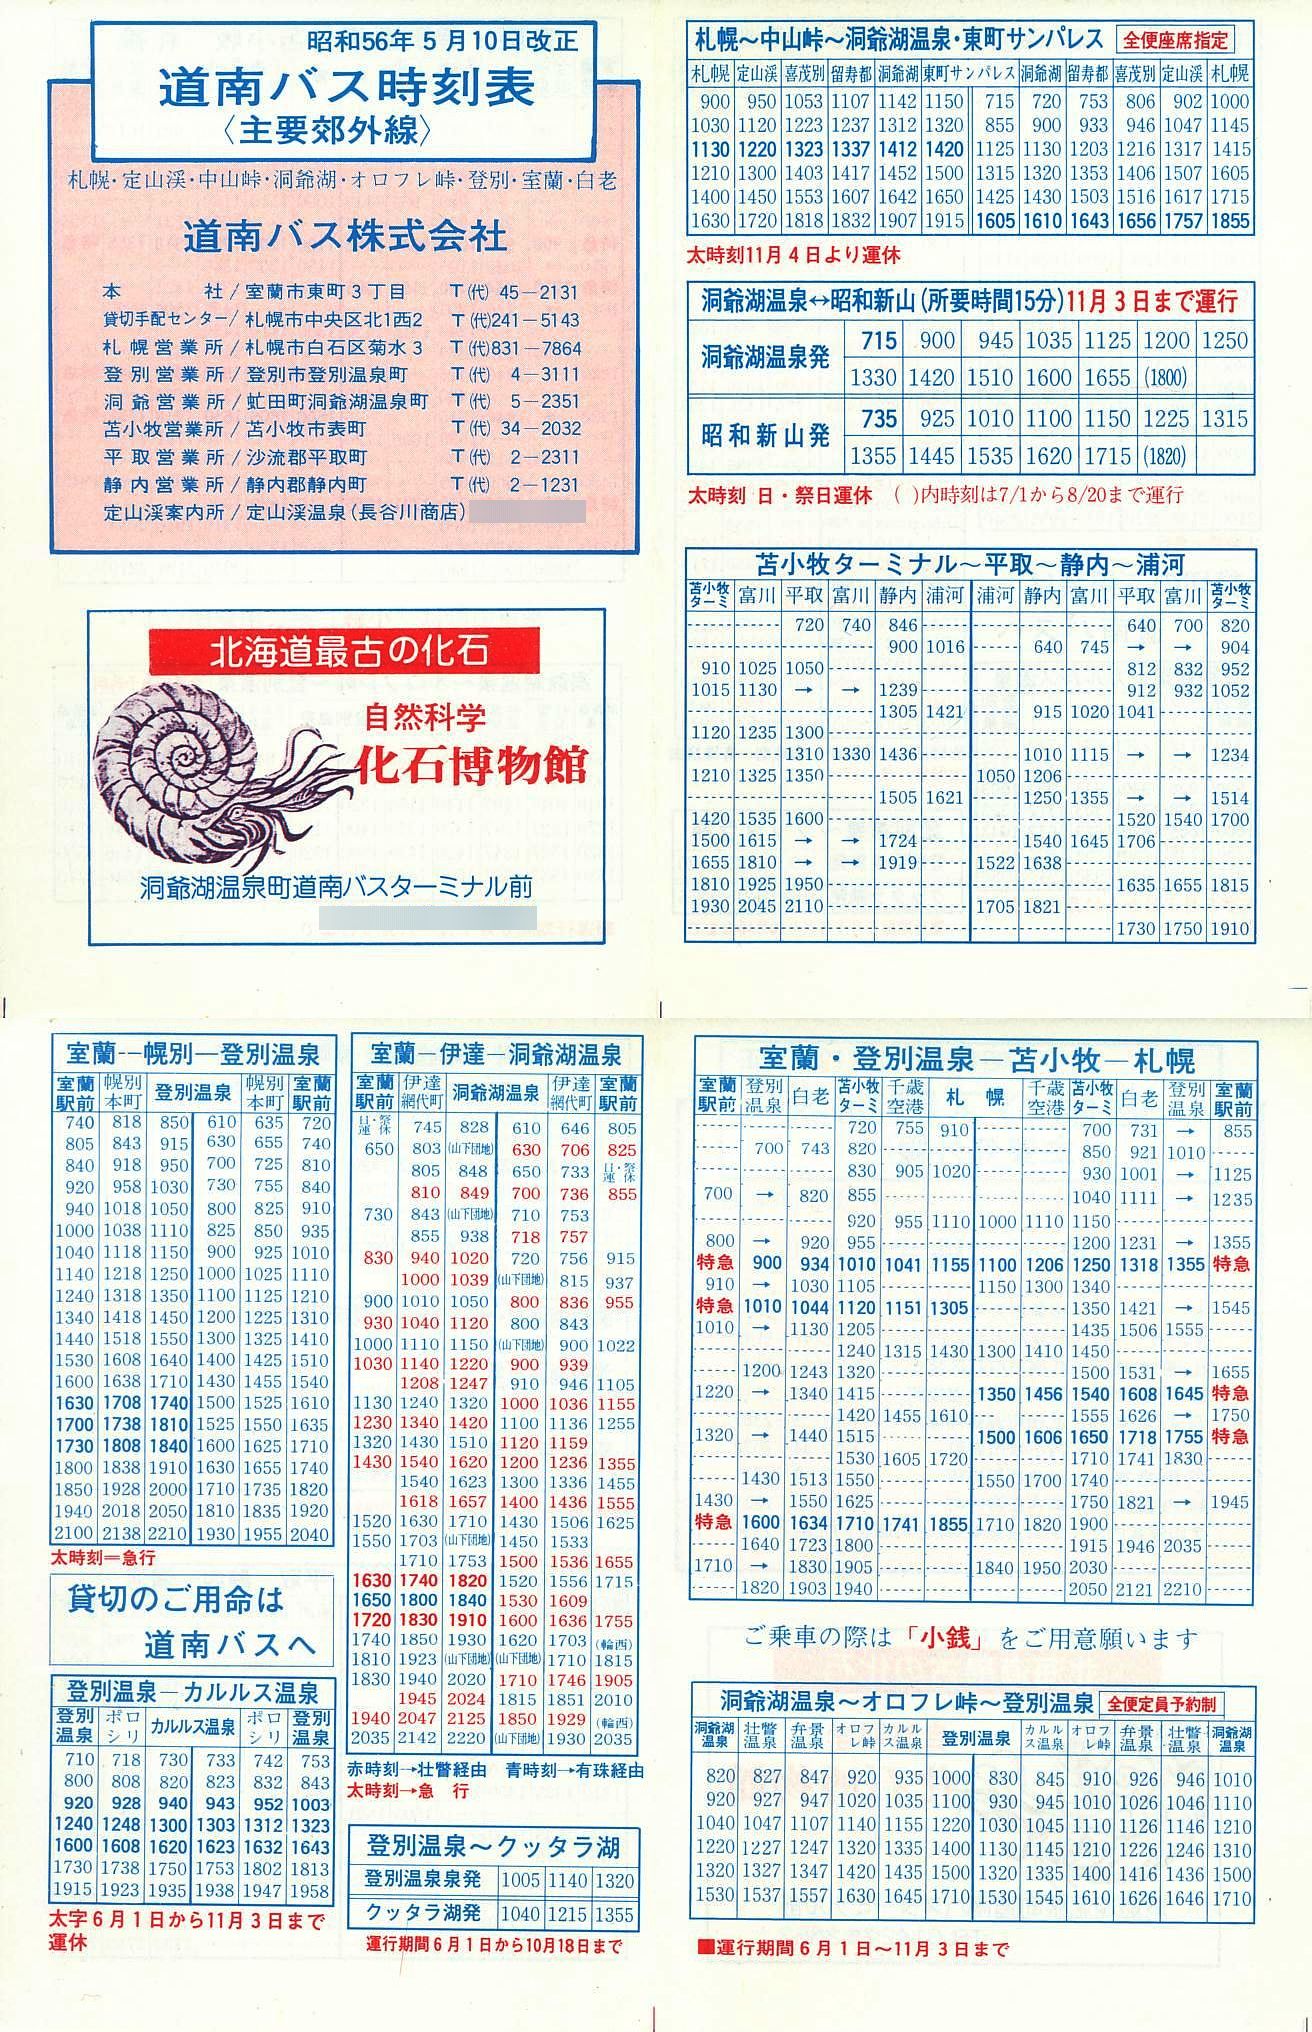 1981-05-10改正_道南バス_主要郊外線時刻表